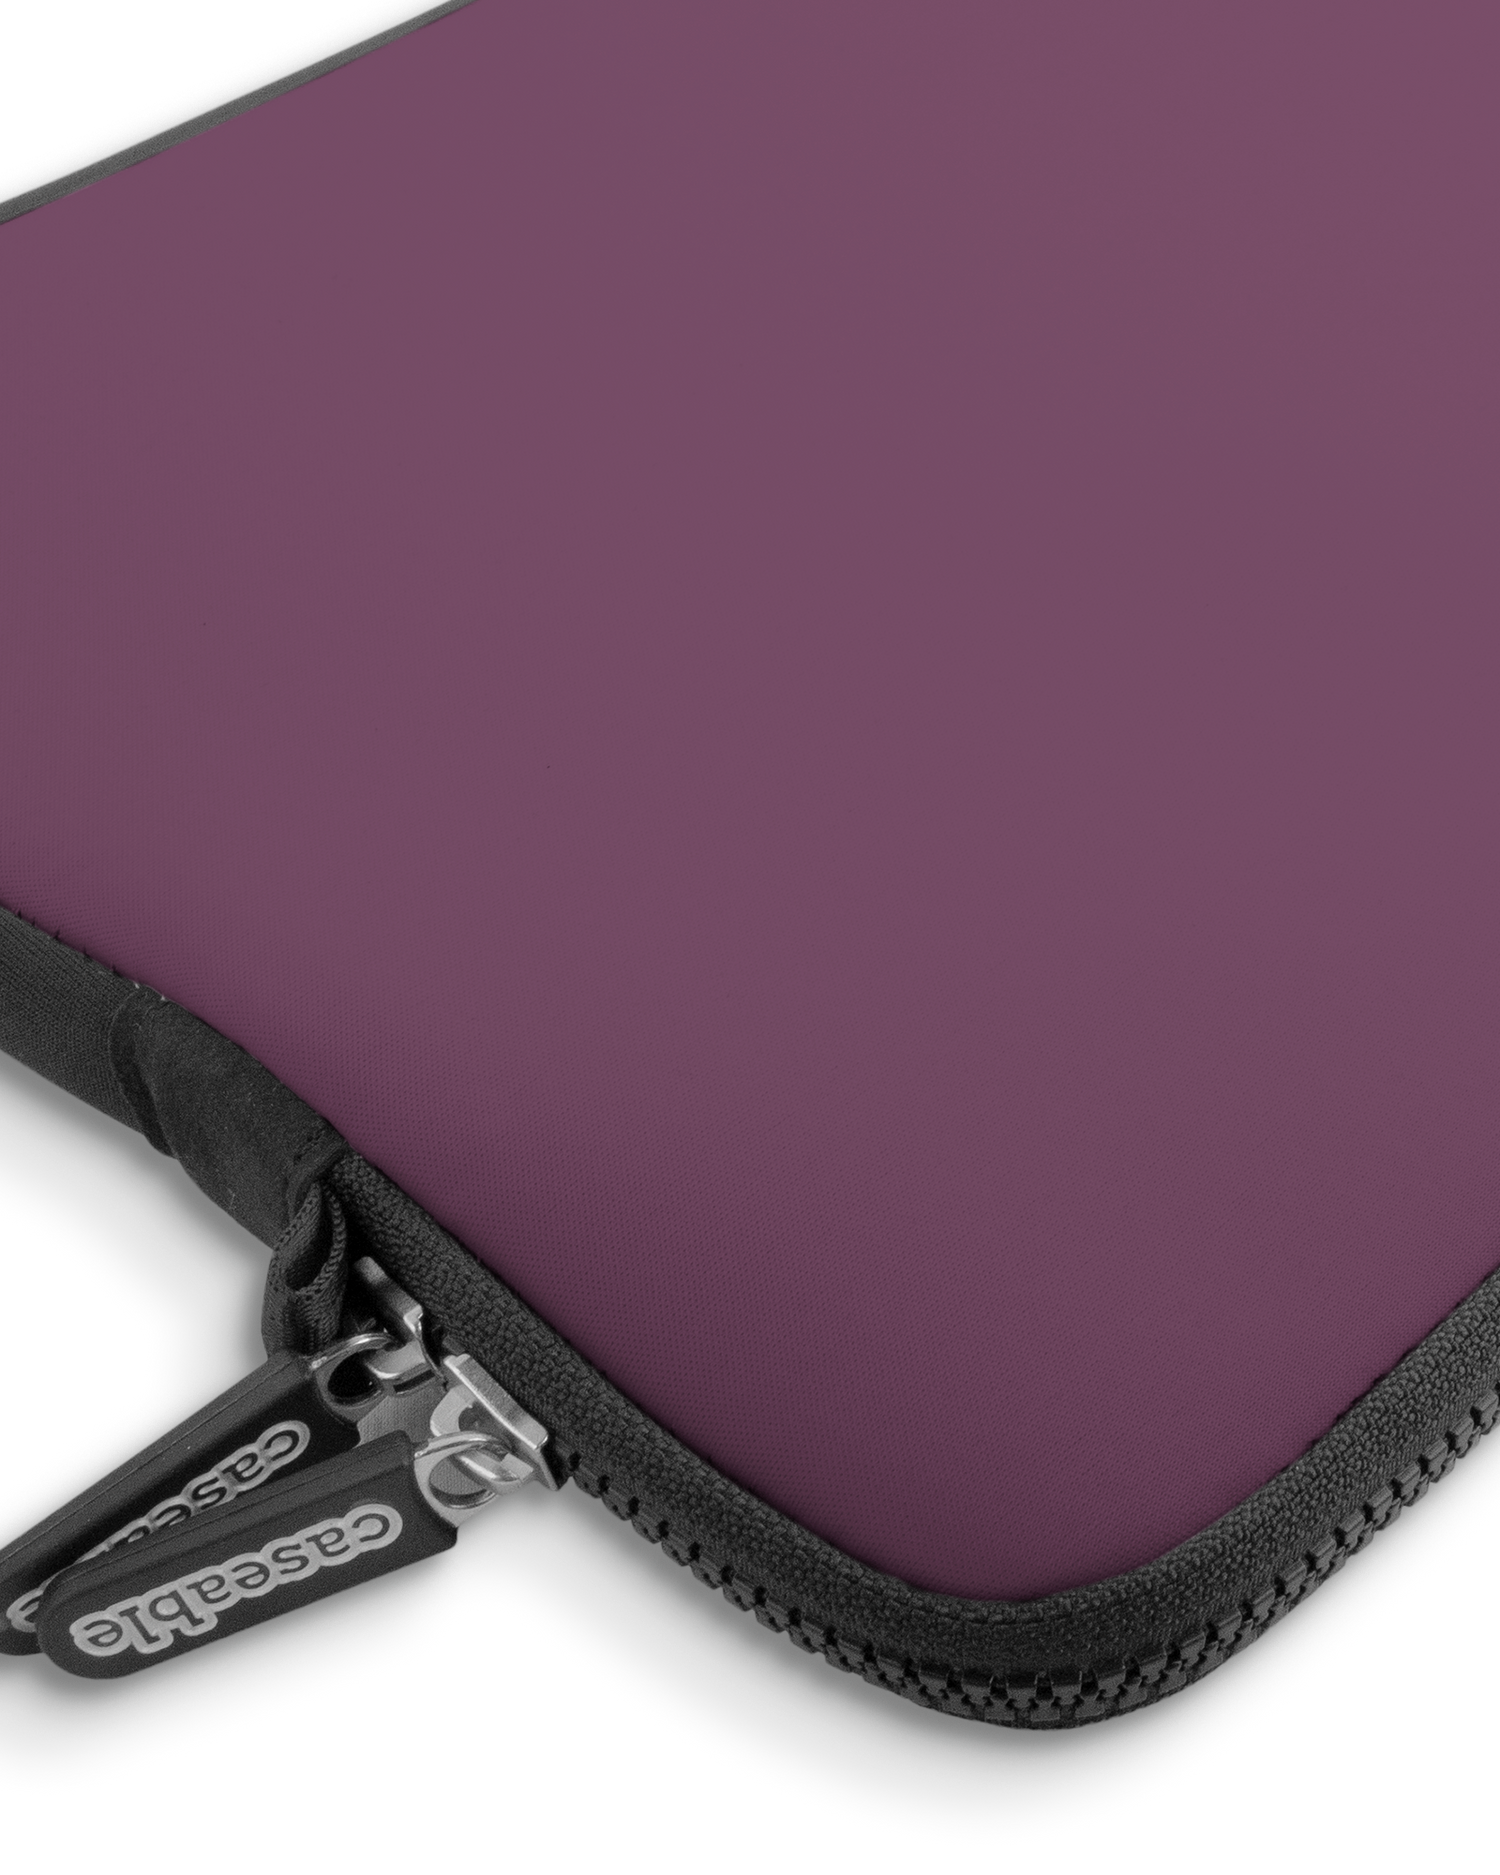 PLUM Premium Laptoptasche 13-14 Zoll mit Gerät im Inneren